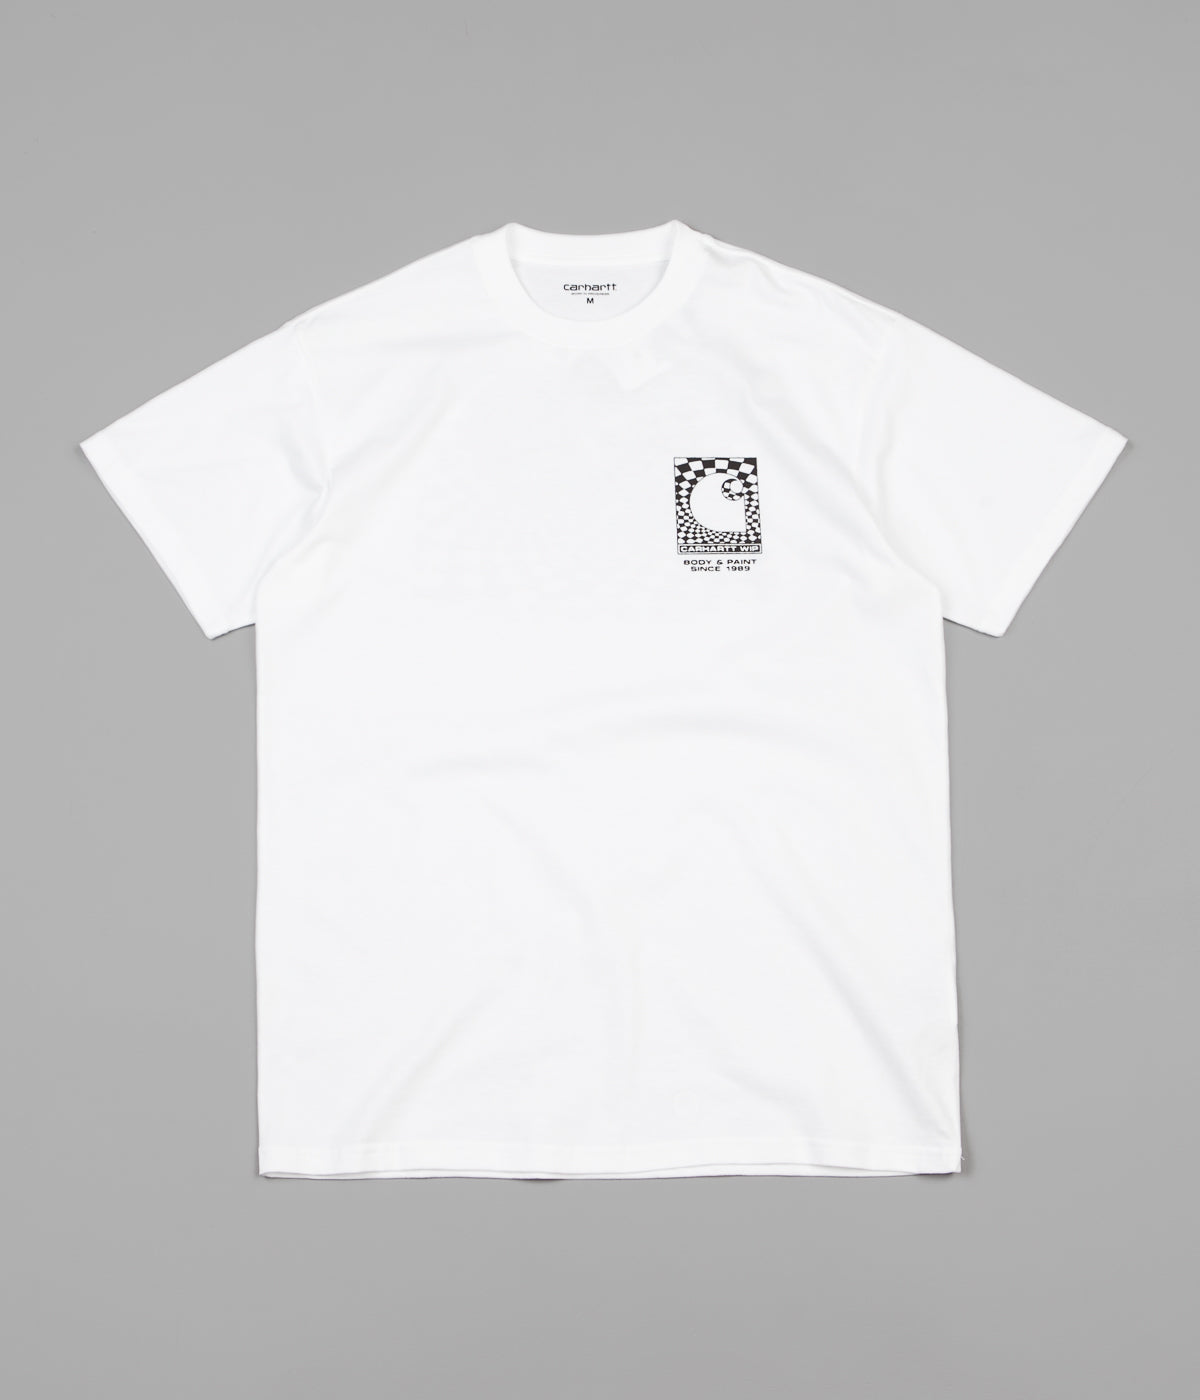 Carhartt Body & Paint T-Shirt - White / Black | Flatspot